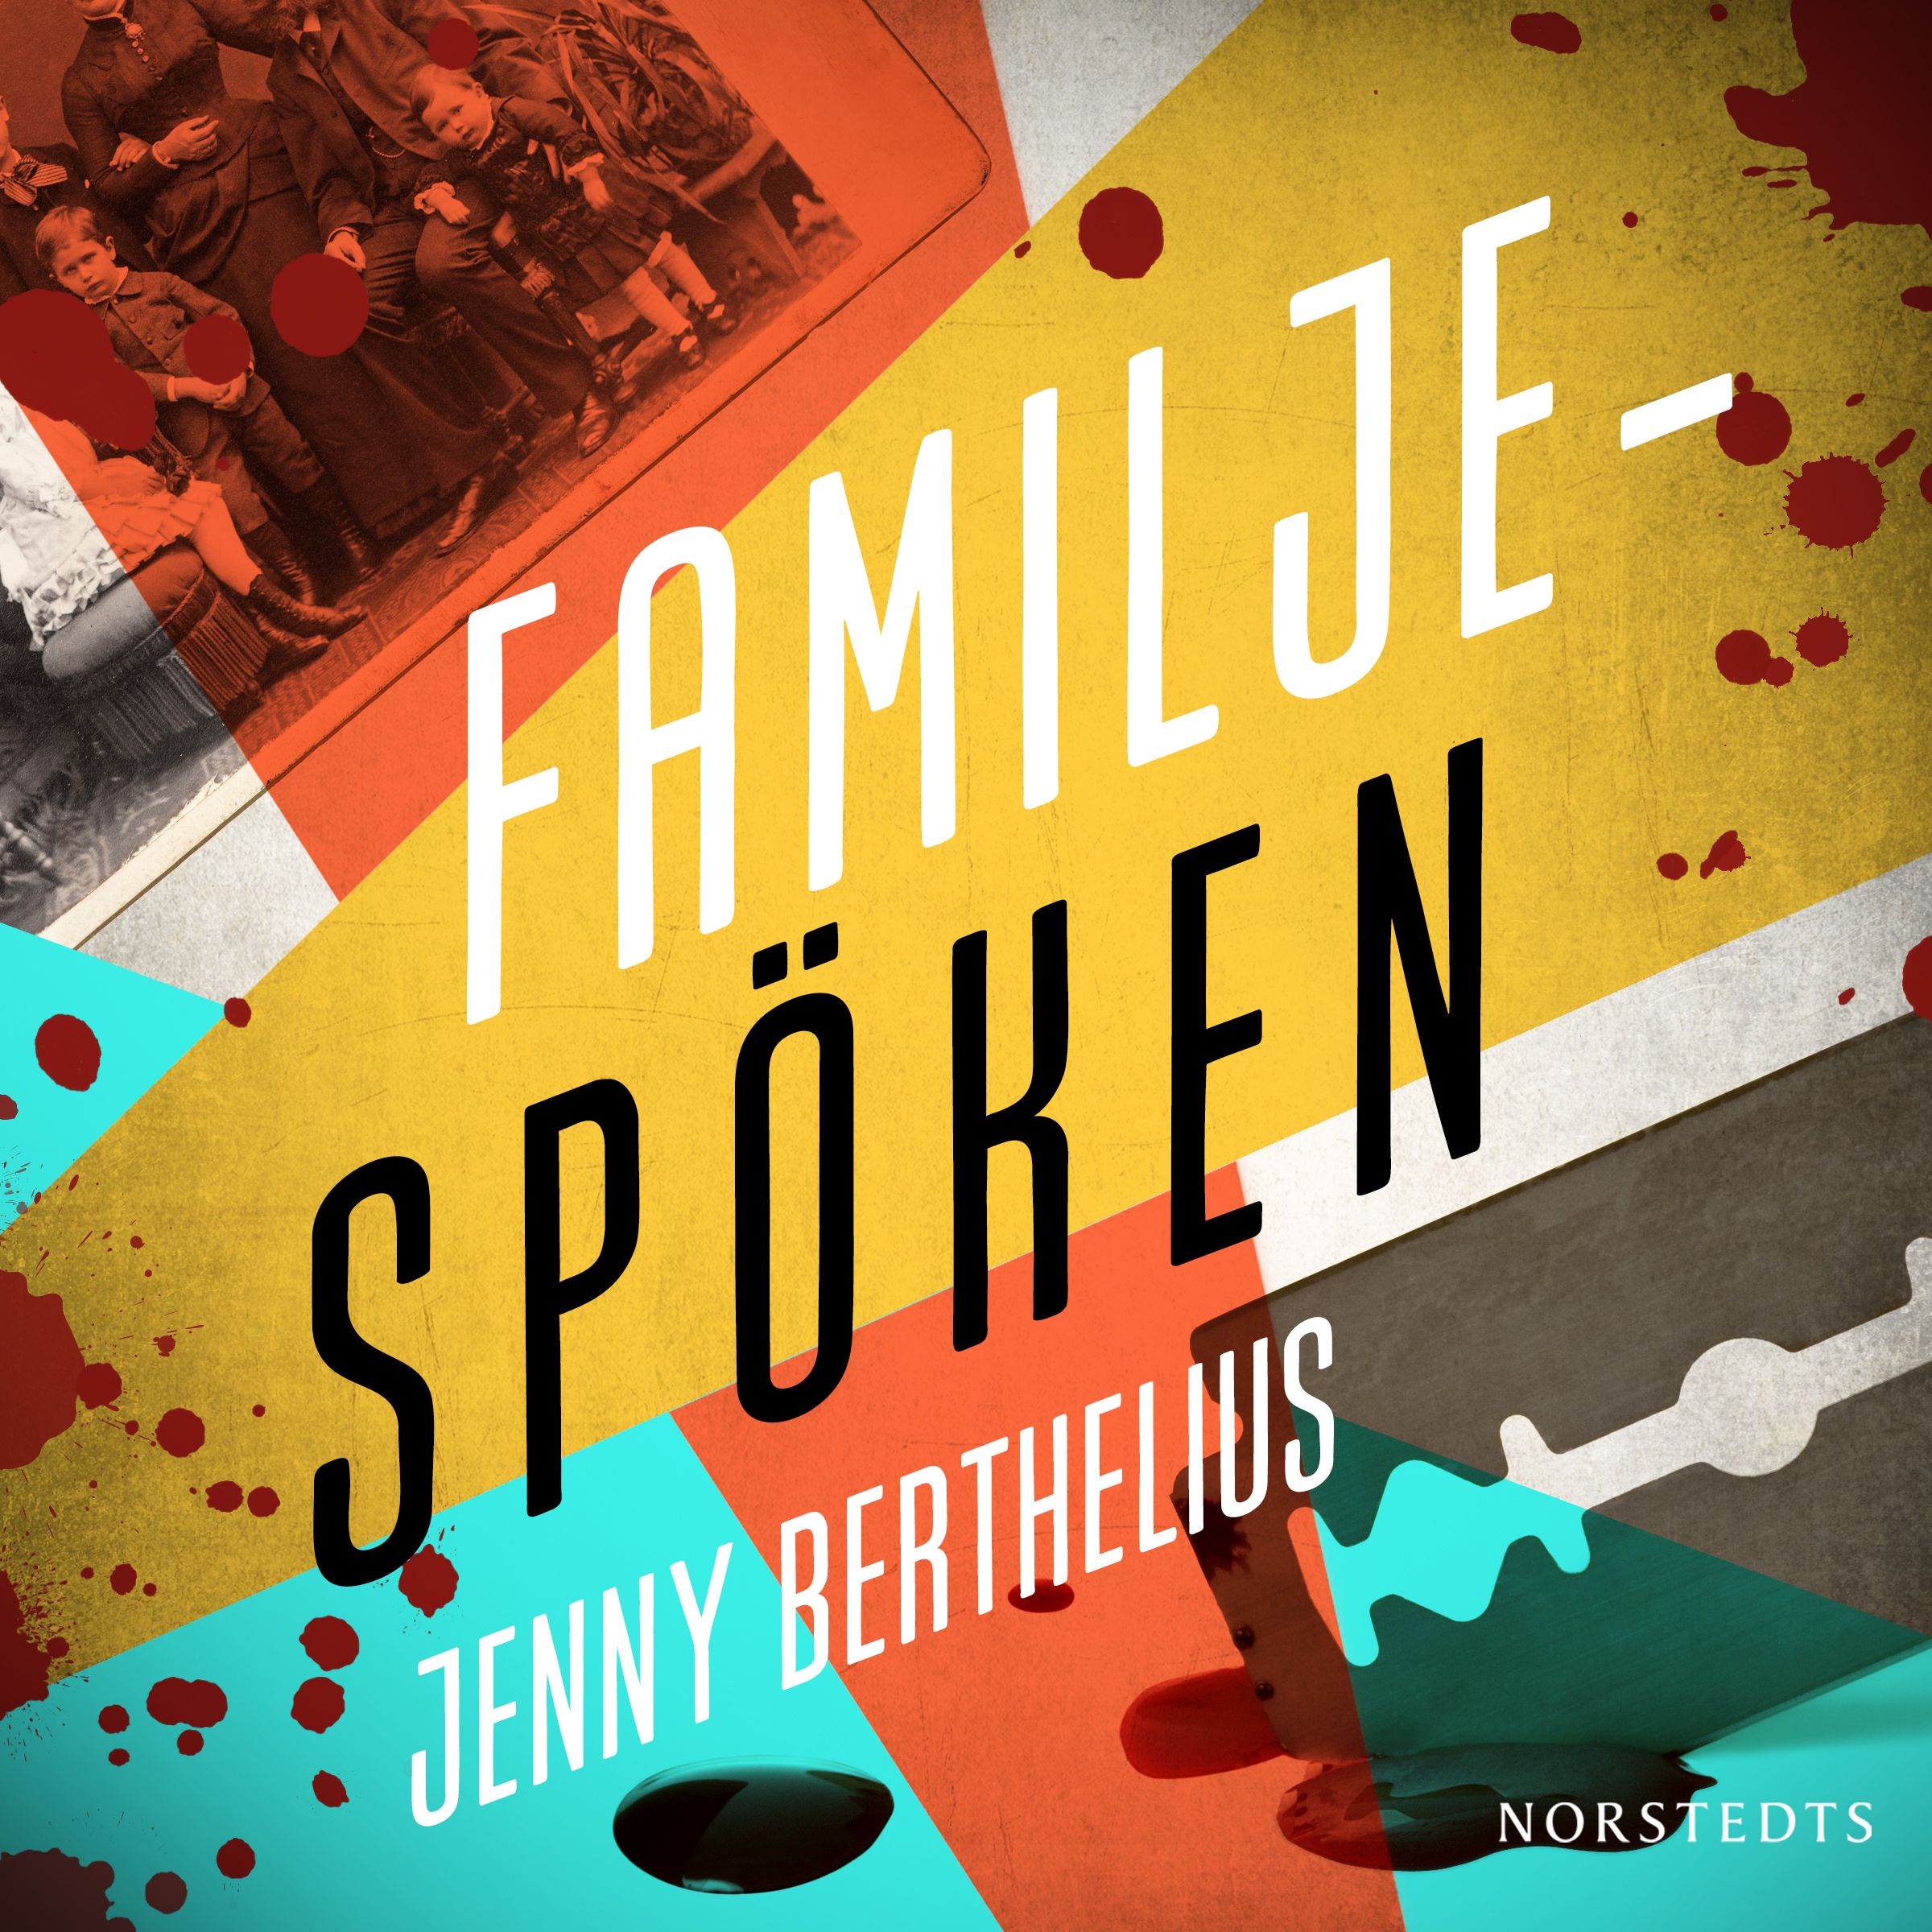 Familjespöken, ljudbok av Jenny Berthelius